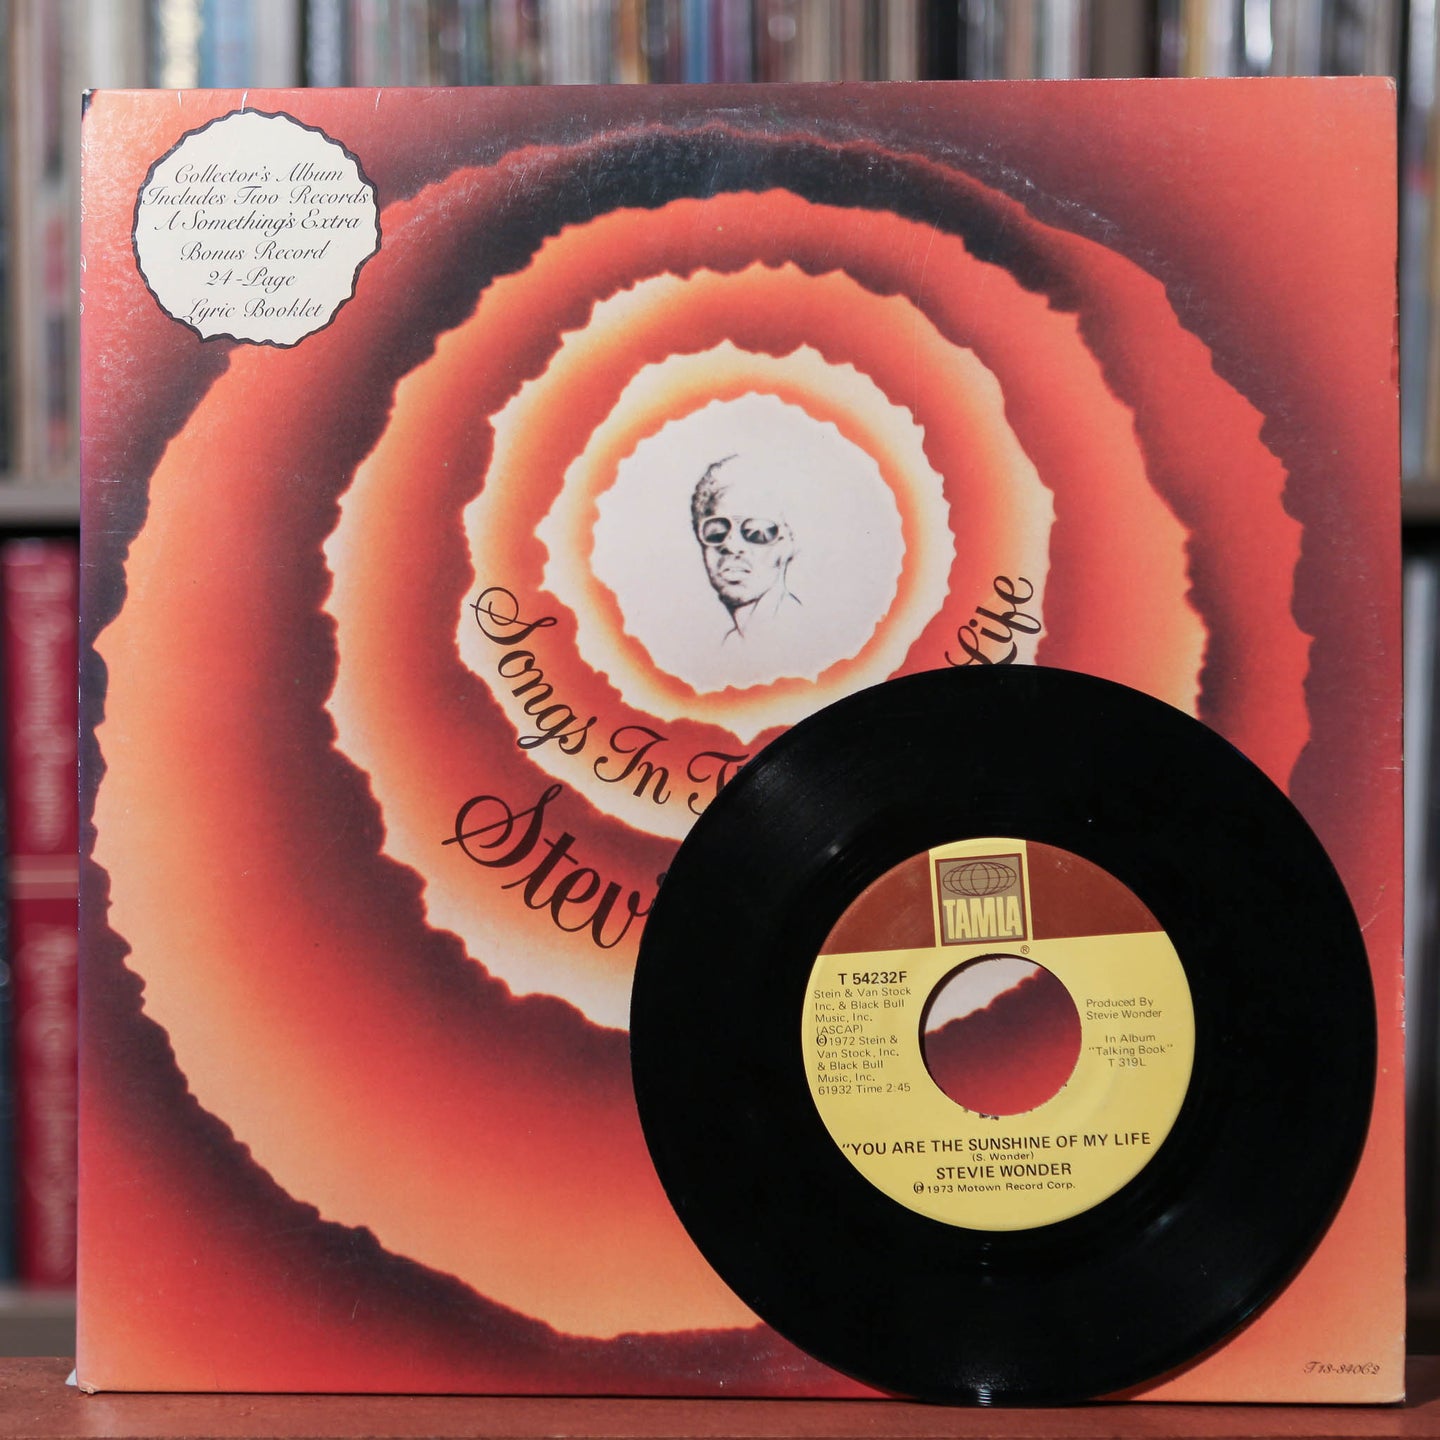 Stevie Wonder - Songs In The Key Of Life - 2LP - 1976 Tamla, VG+/EX w/ 7